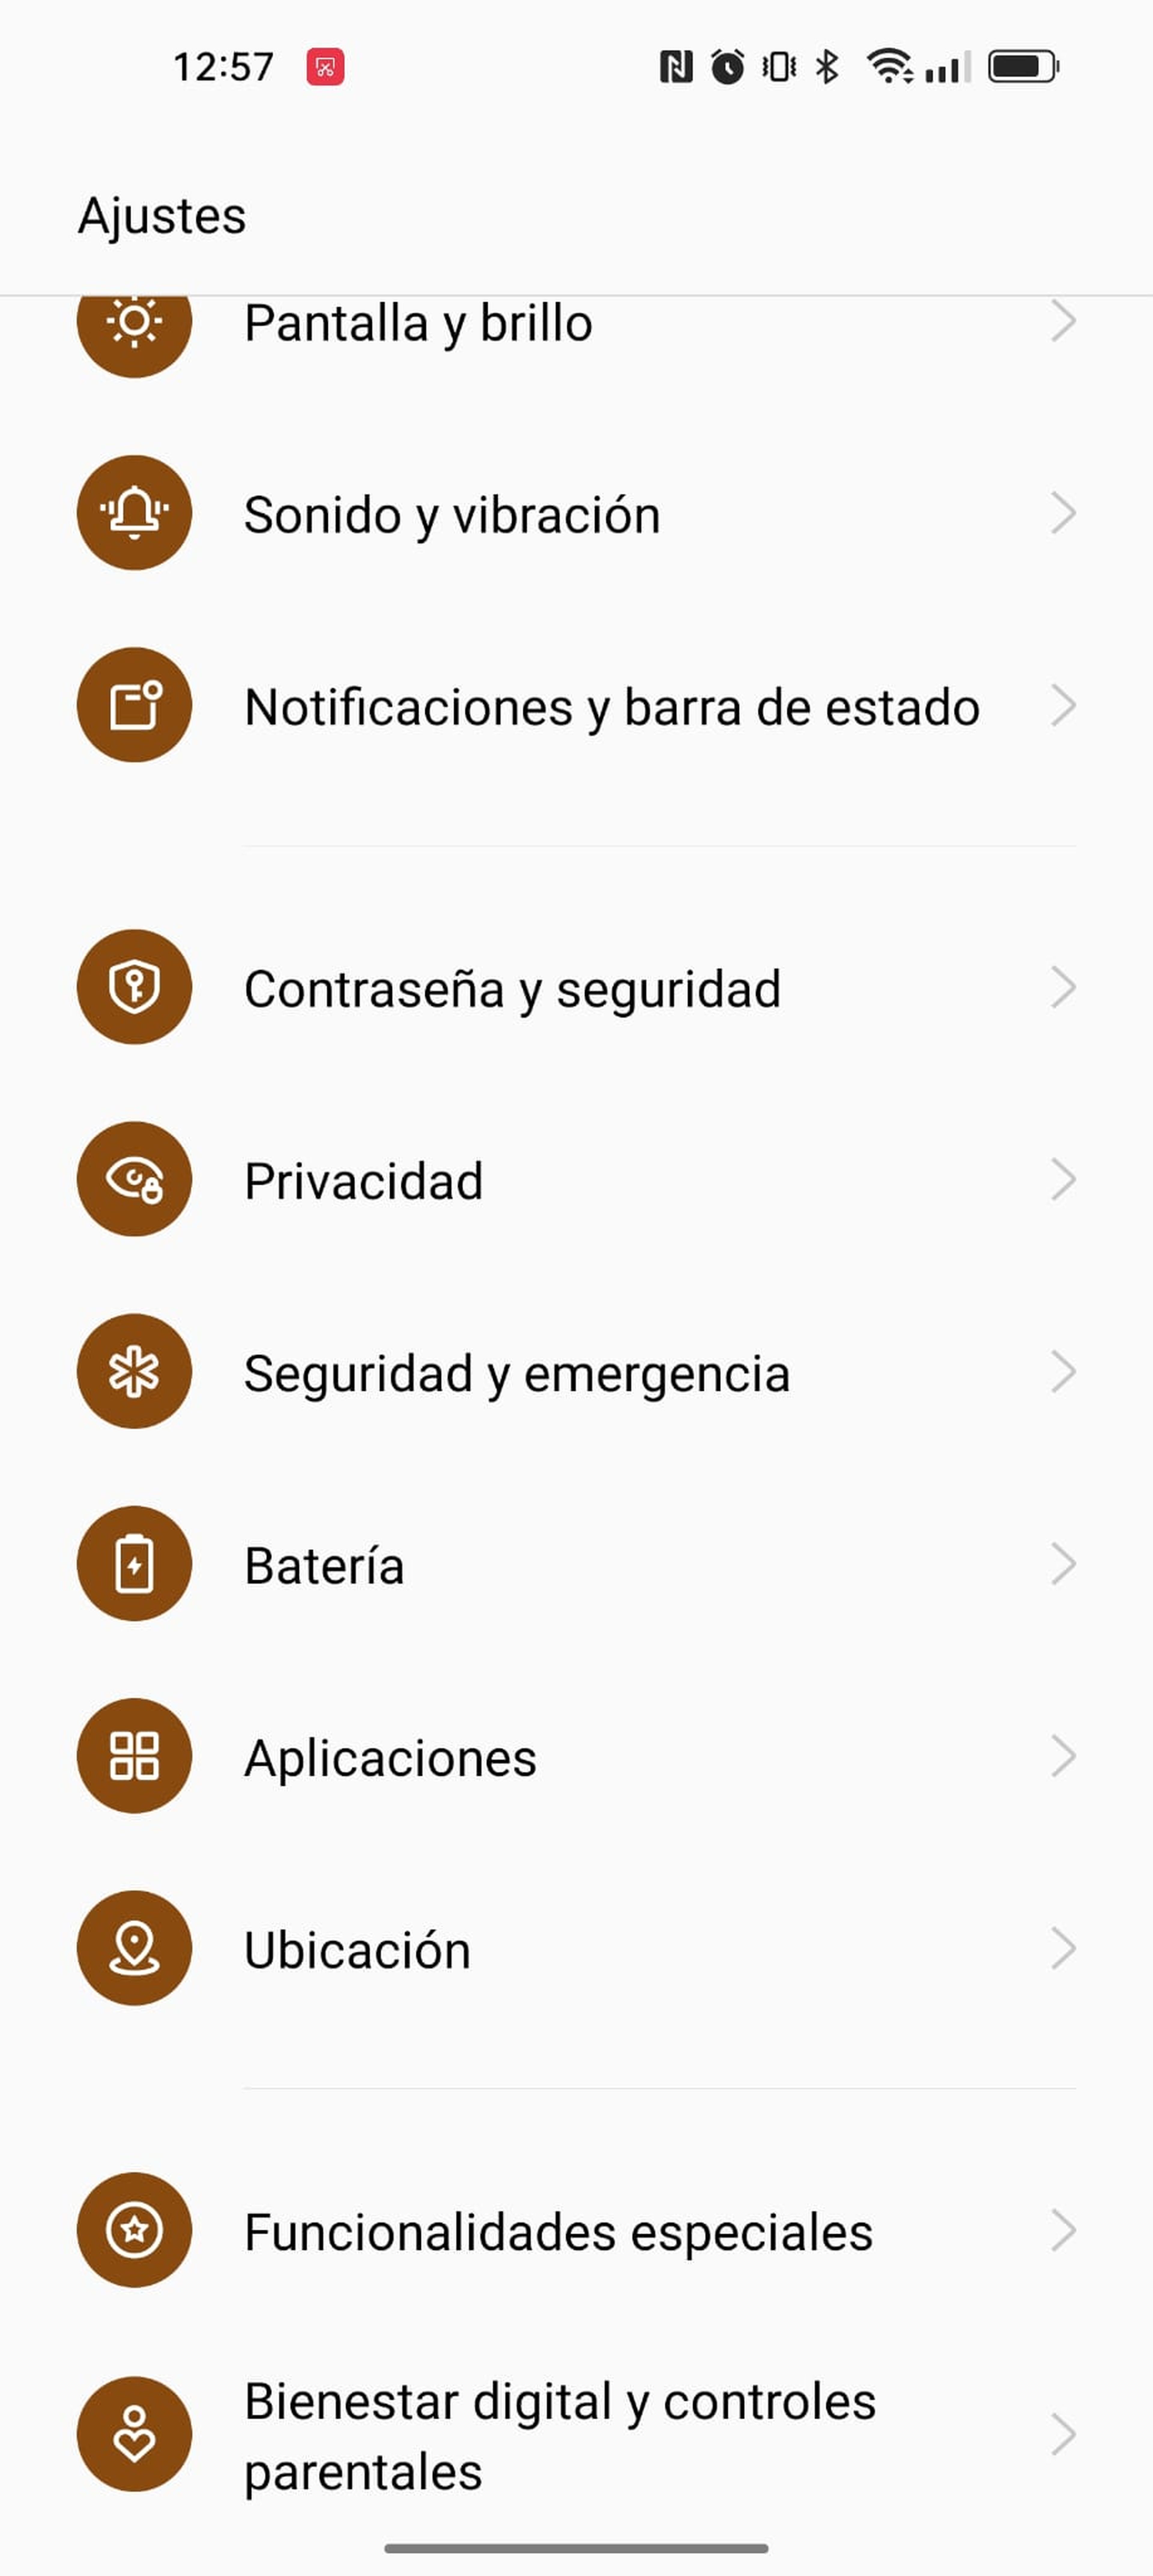 Activar funciones SOS de emergencia en Android